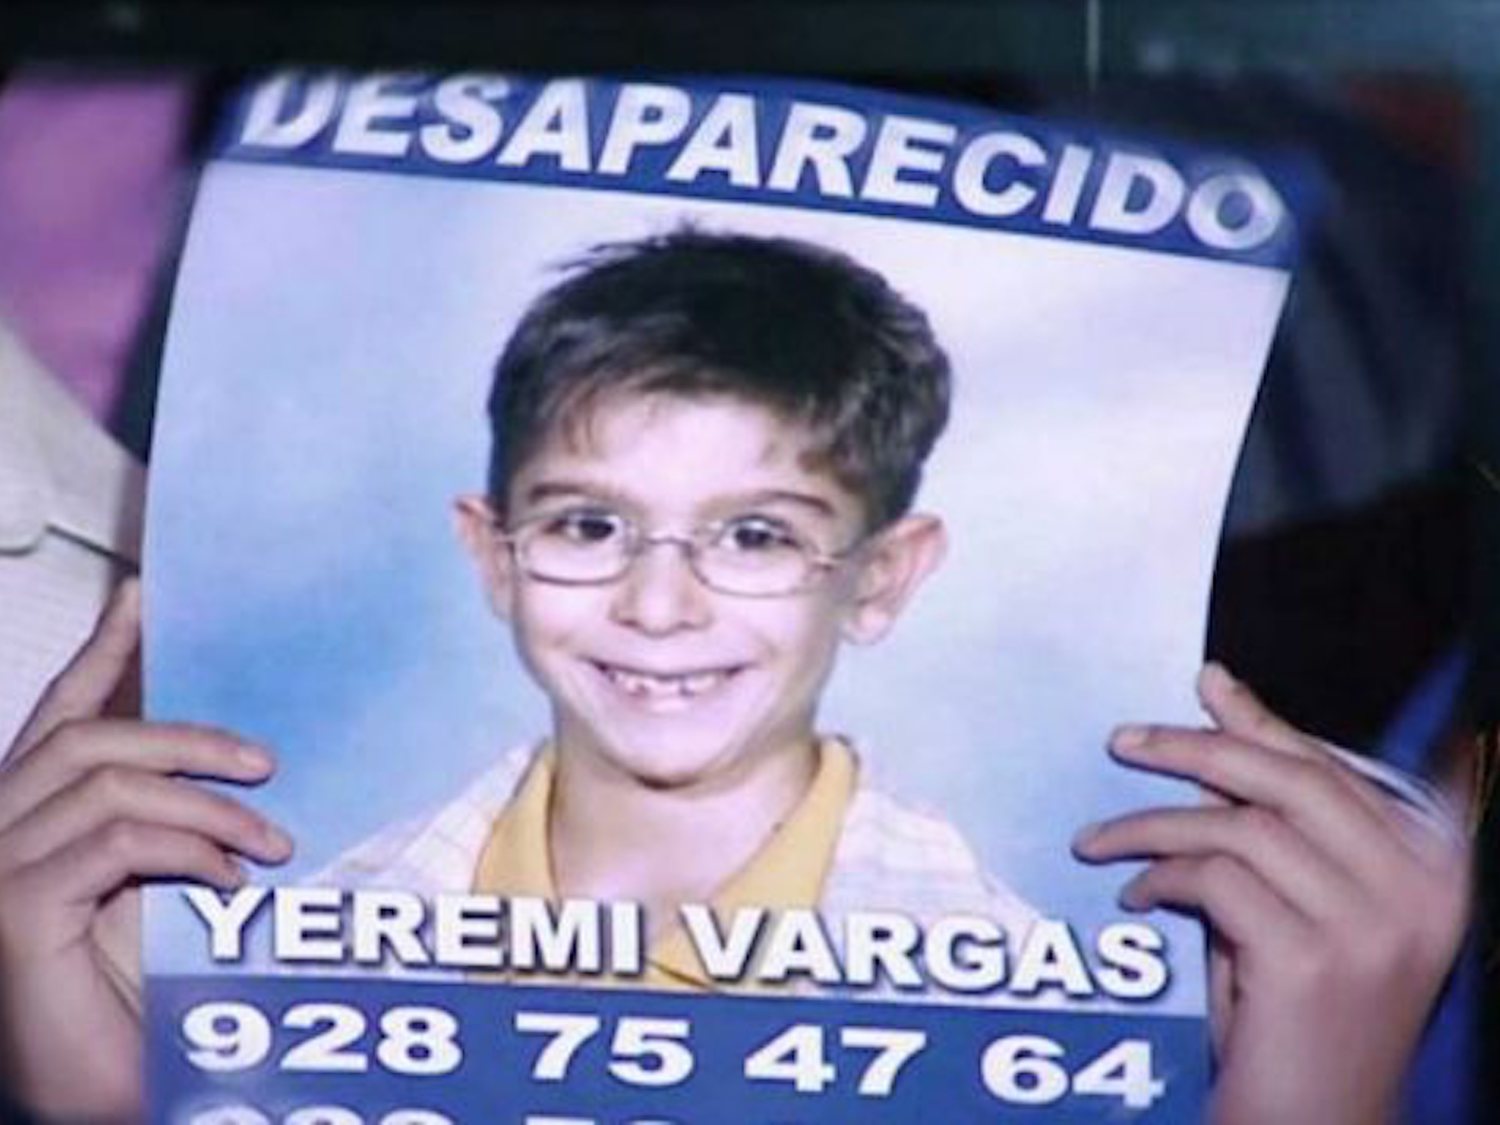 La familia de Yéremi Vargas pide reabrir el caso por nuevas pistas tras doce años de la desaparición